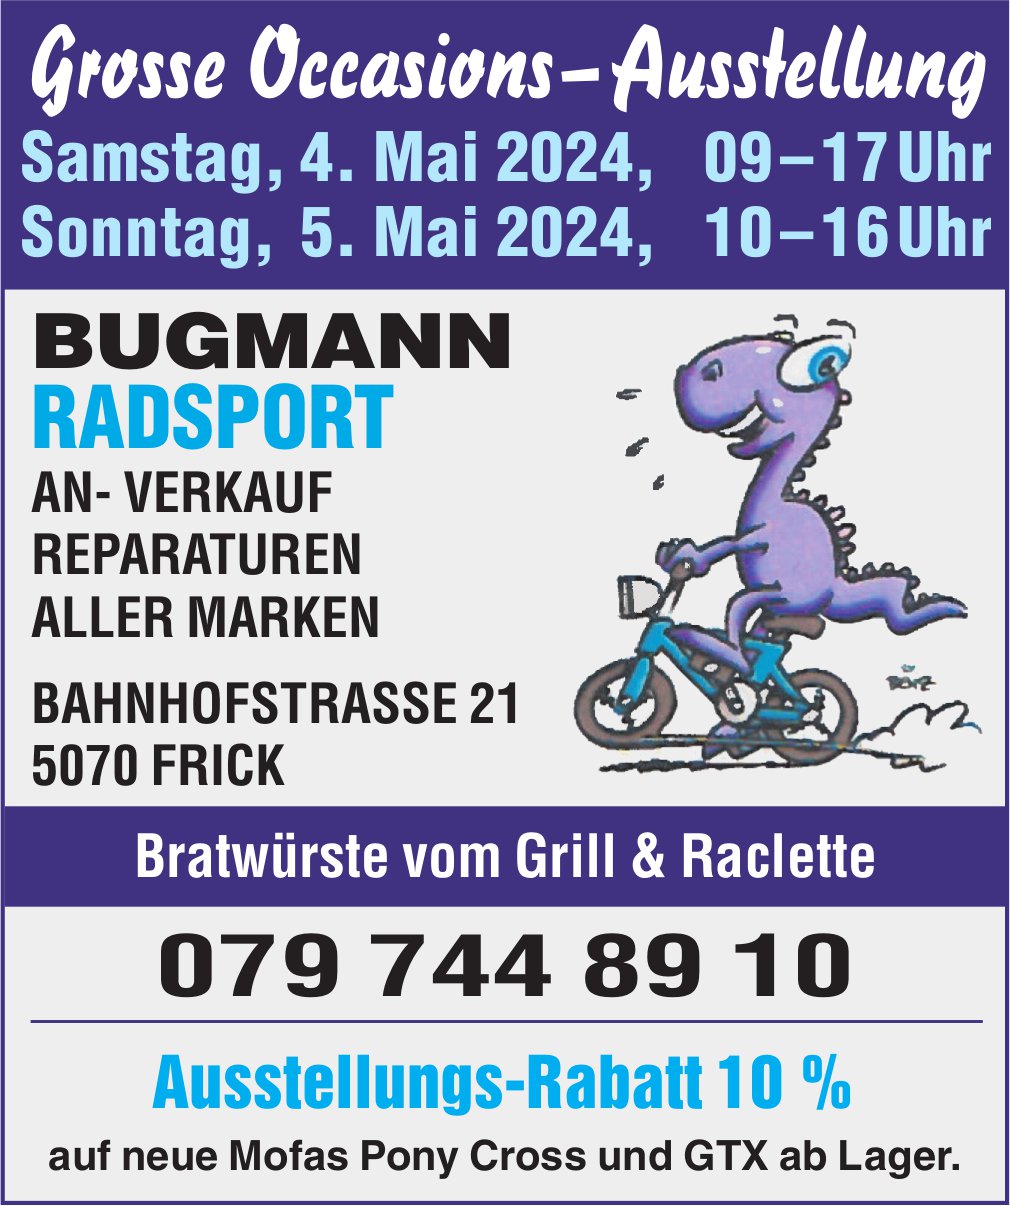 Grosse Occasions‑Ausstellung, 4. und 5. Mai, Bugmann Radsport, Frick